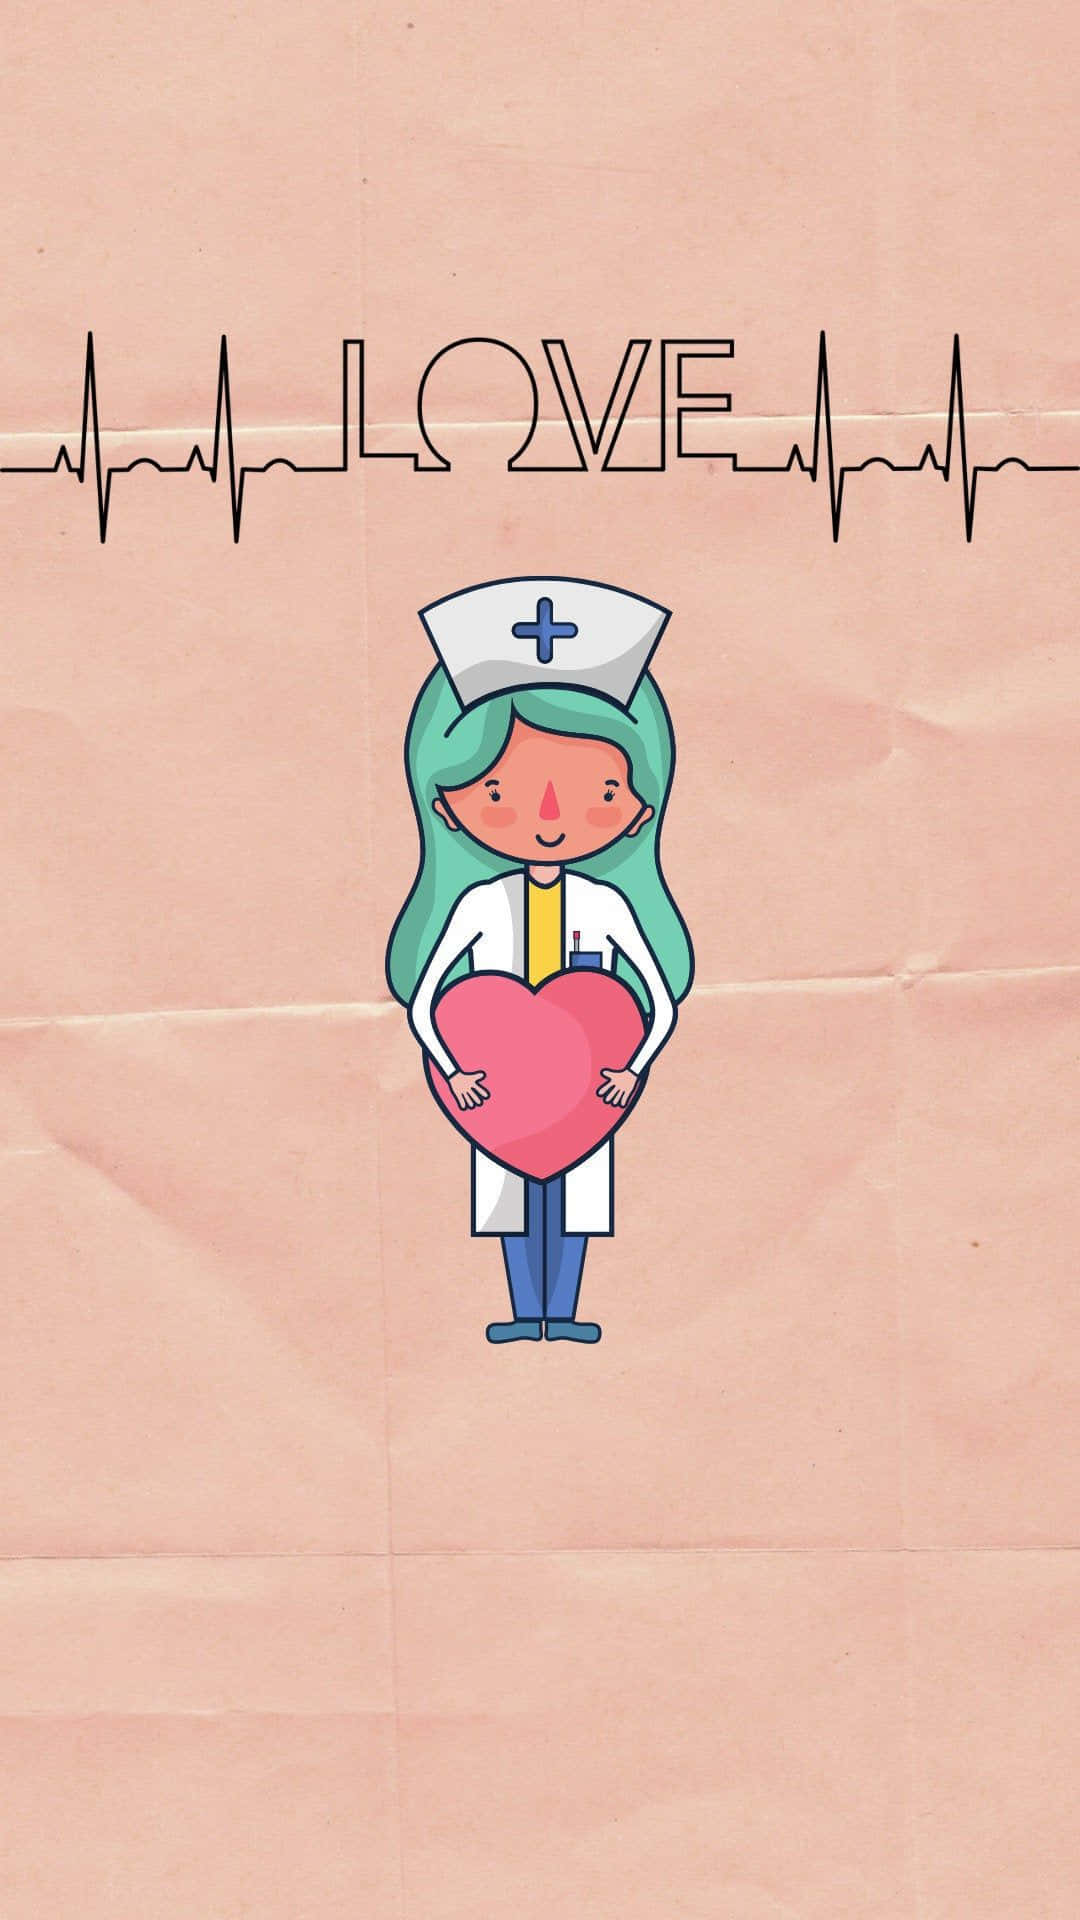 Nurse Wallpaper Images  Free Download on Freepik